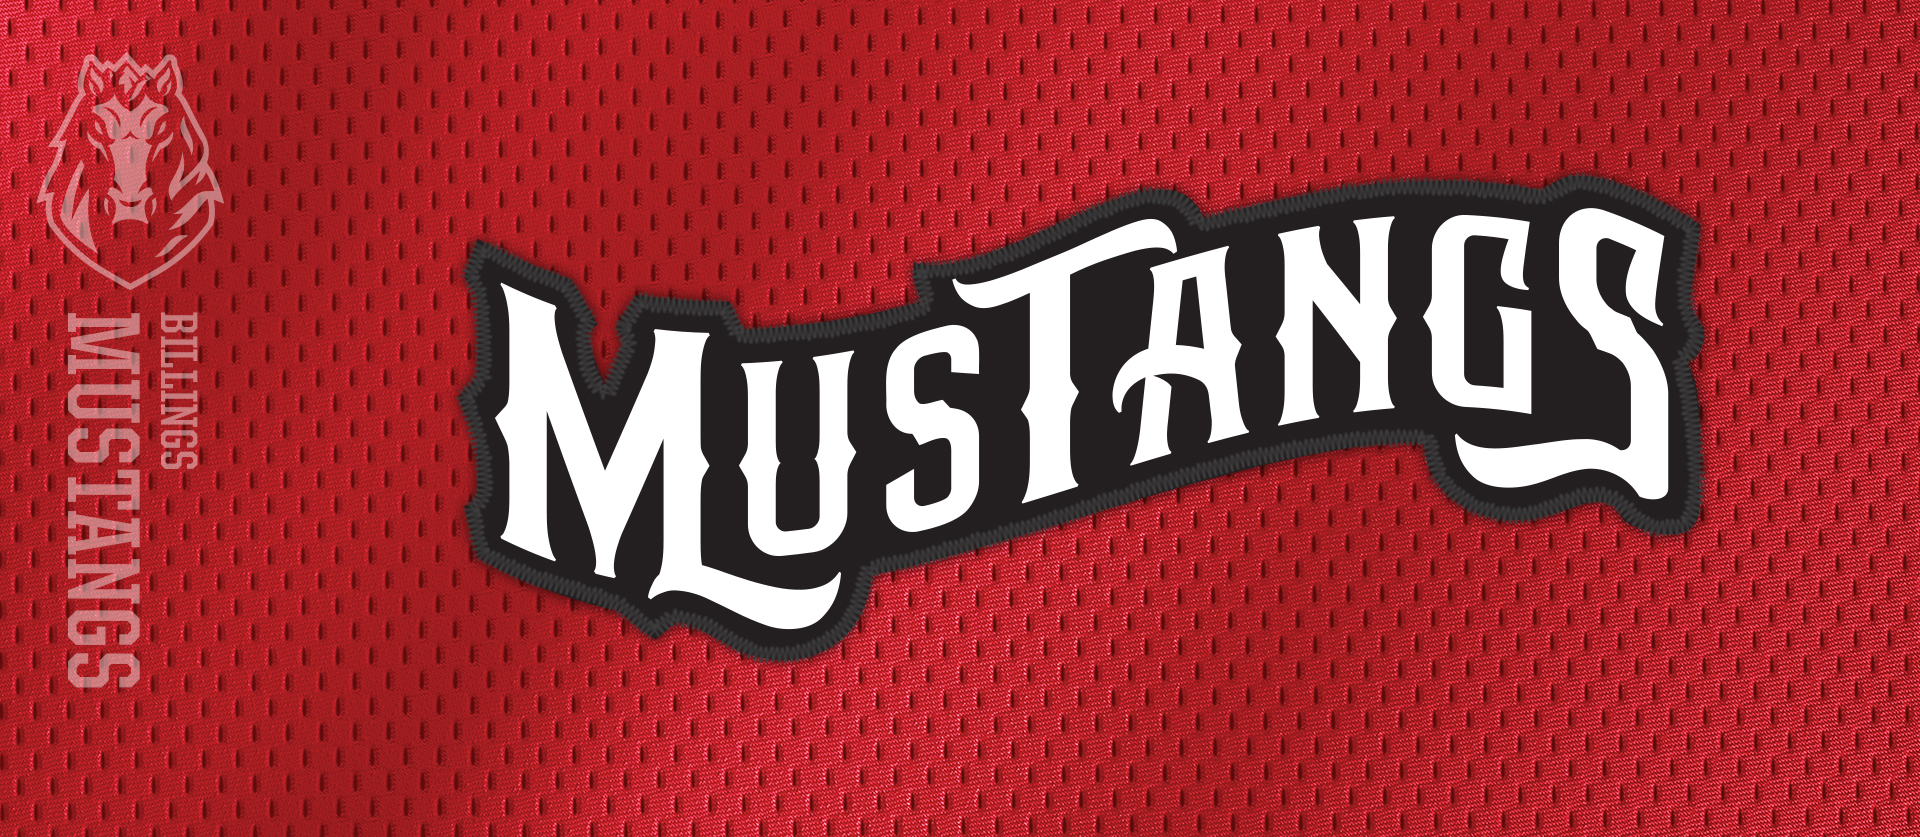 Billings Mustangs wordmark design of the Pioneer Baseball League